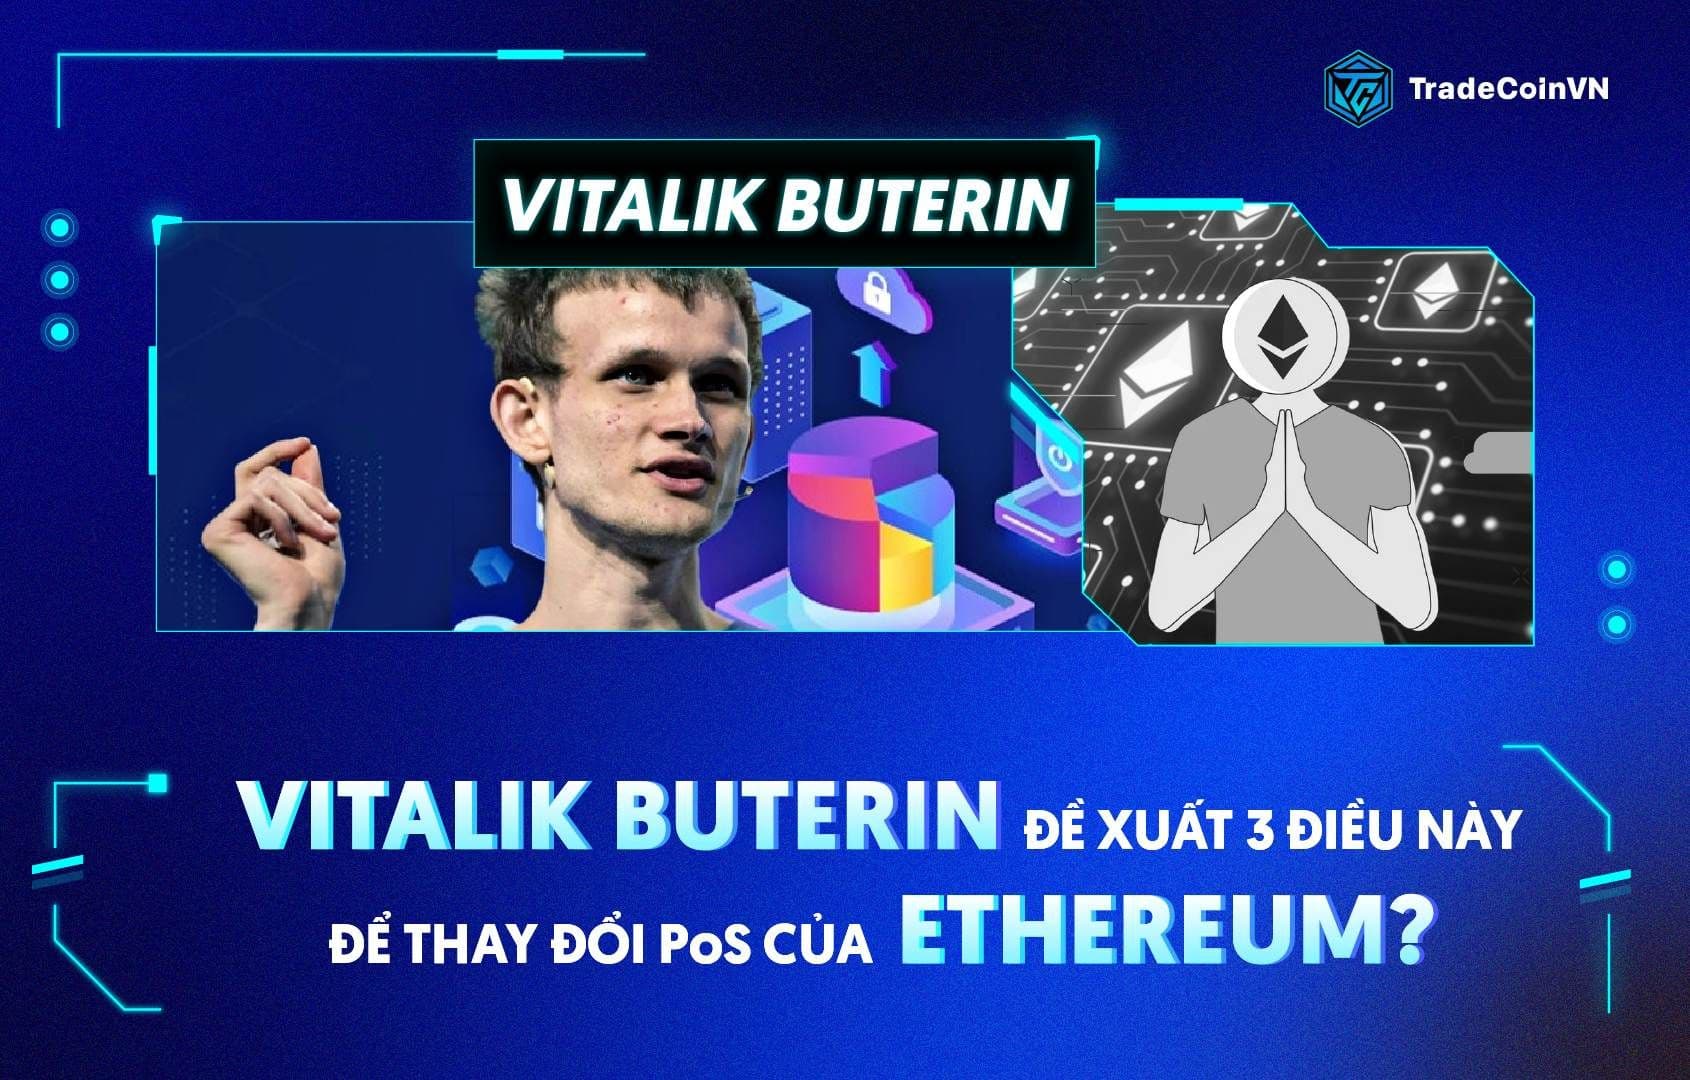 Vitalik Buterin đề xuất 3 điều này để thay đổi PoS của Ethereum